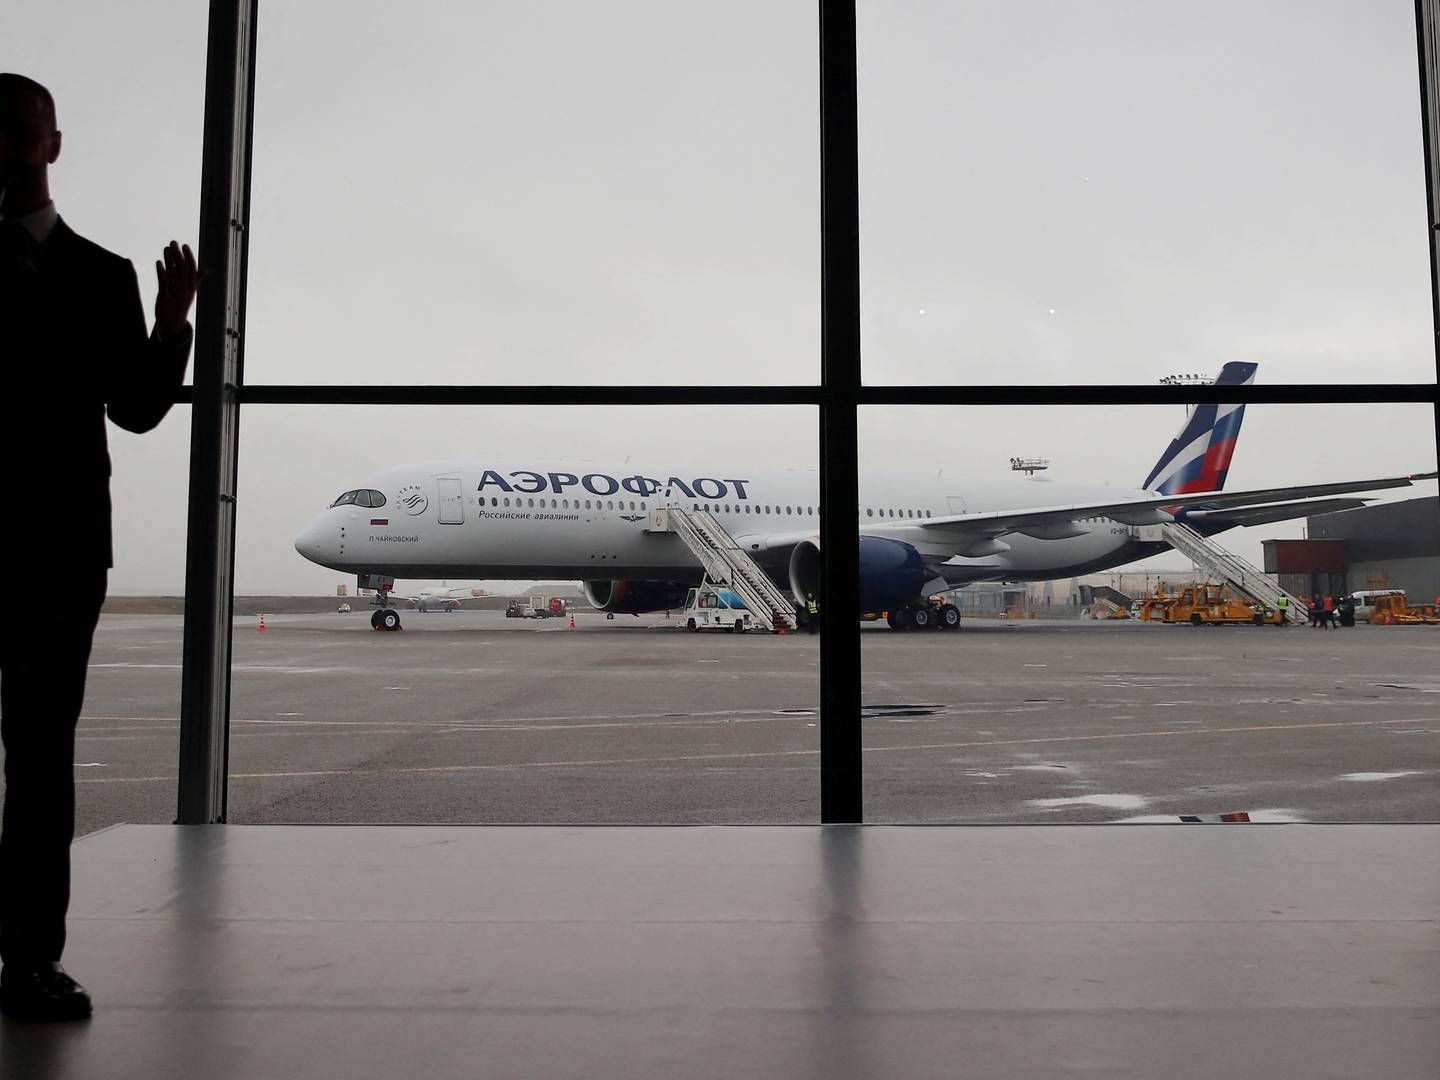 I en ny sanktionspakke sætter EU-Kommissionen fokus på russiske operatorer som Aeroflot. Selskabet taber dog allerede terræn i EU. (ARKIV) | Foto: Maxim Shemetov/REUTERS / X90156